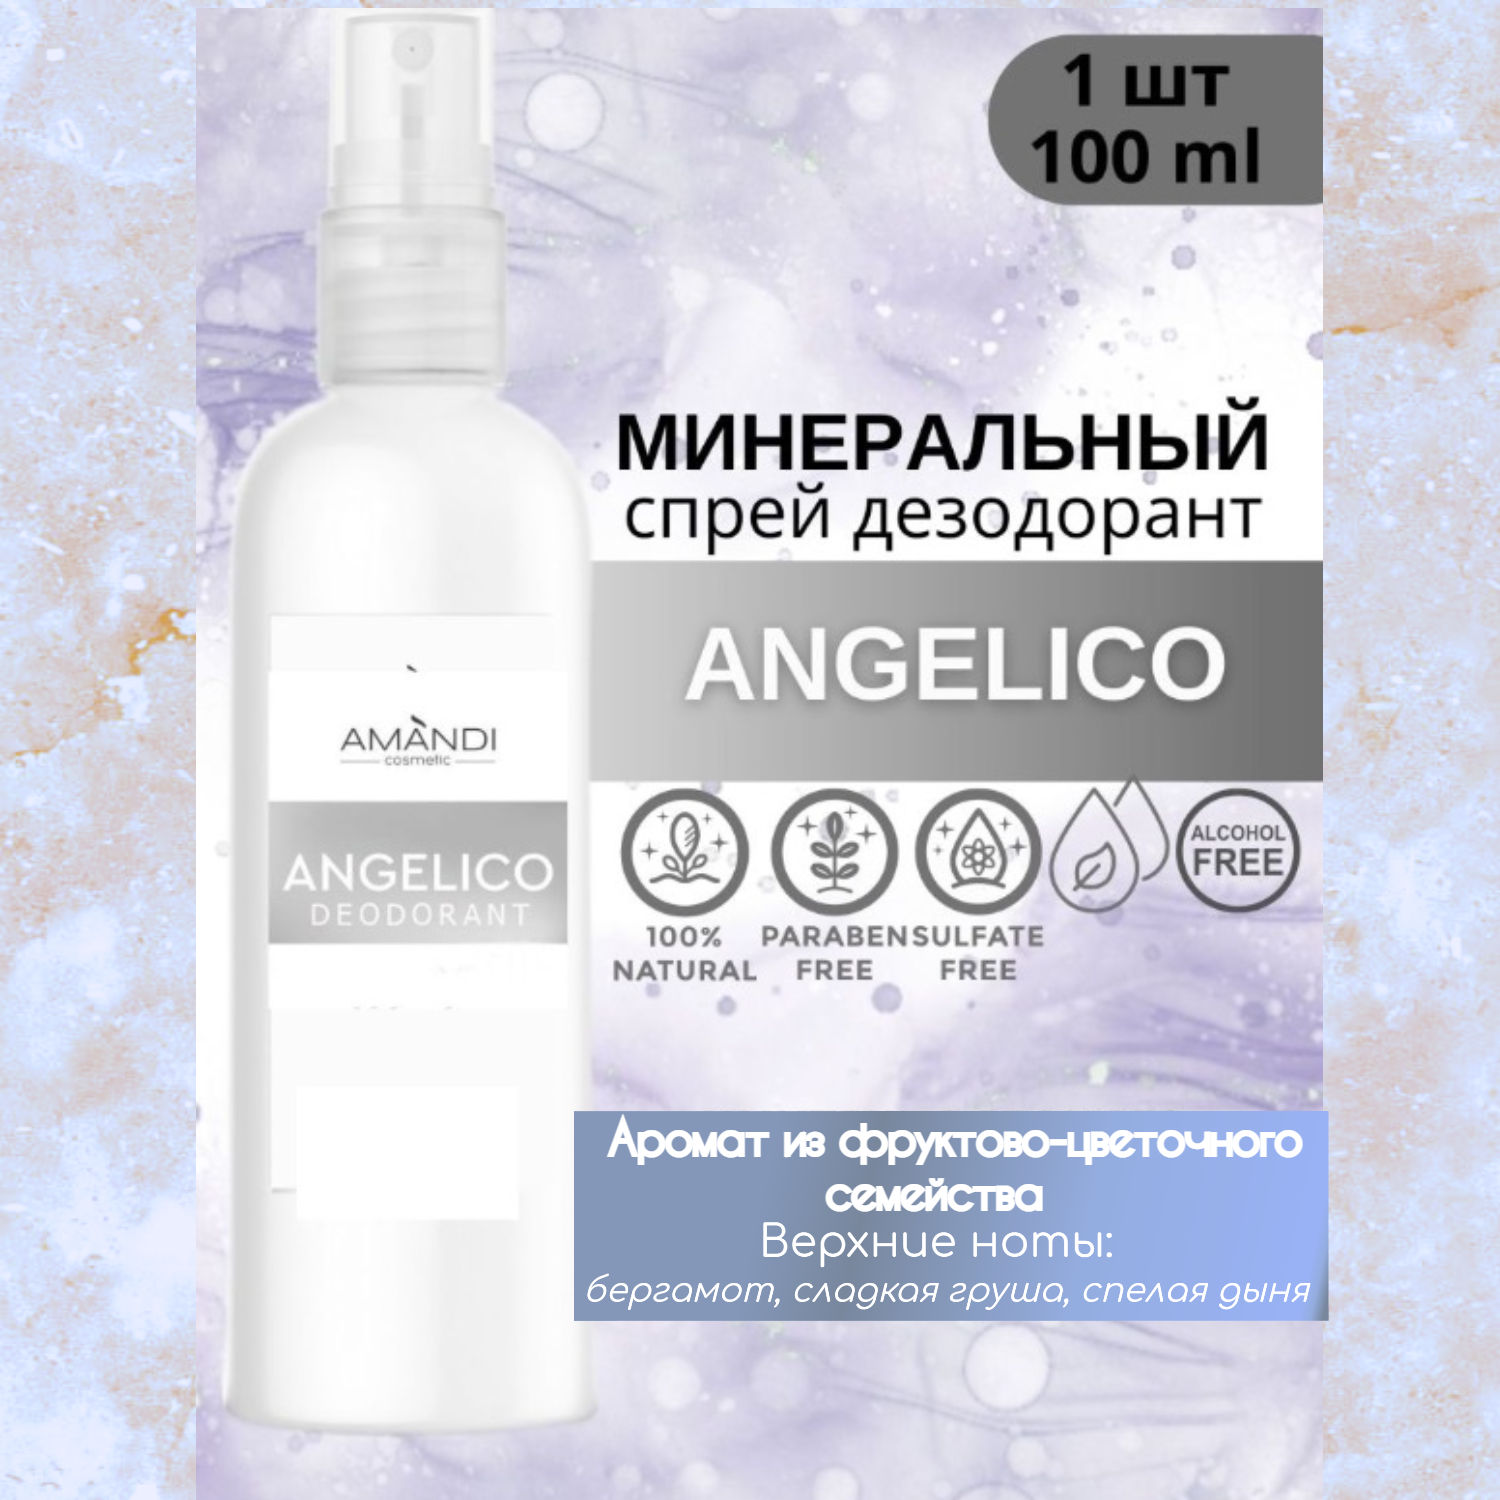 Минеральный дезодорант-спрей AMANDI Angelico цветочно-фруковый аромат 100 мл - фото 2